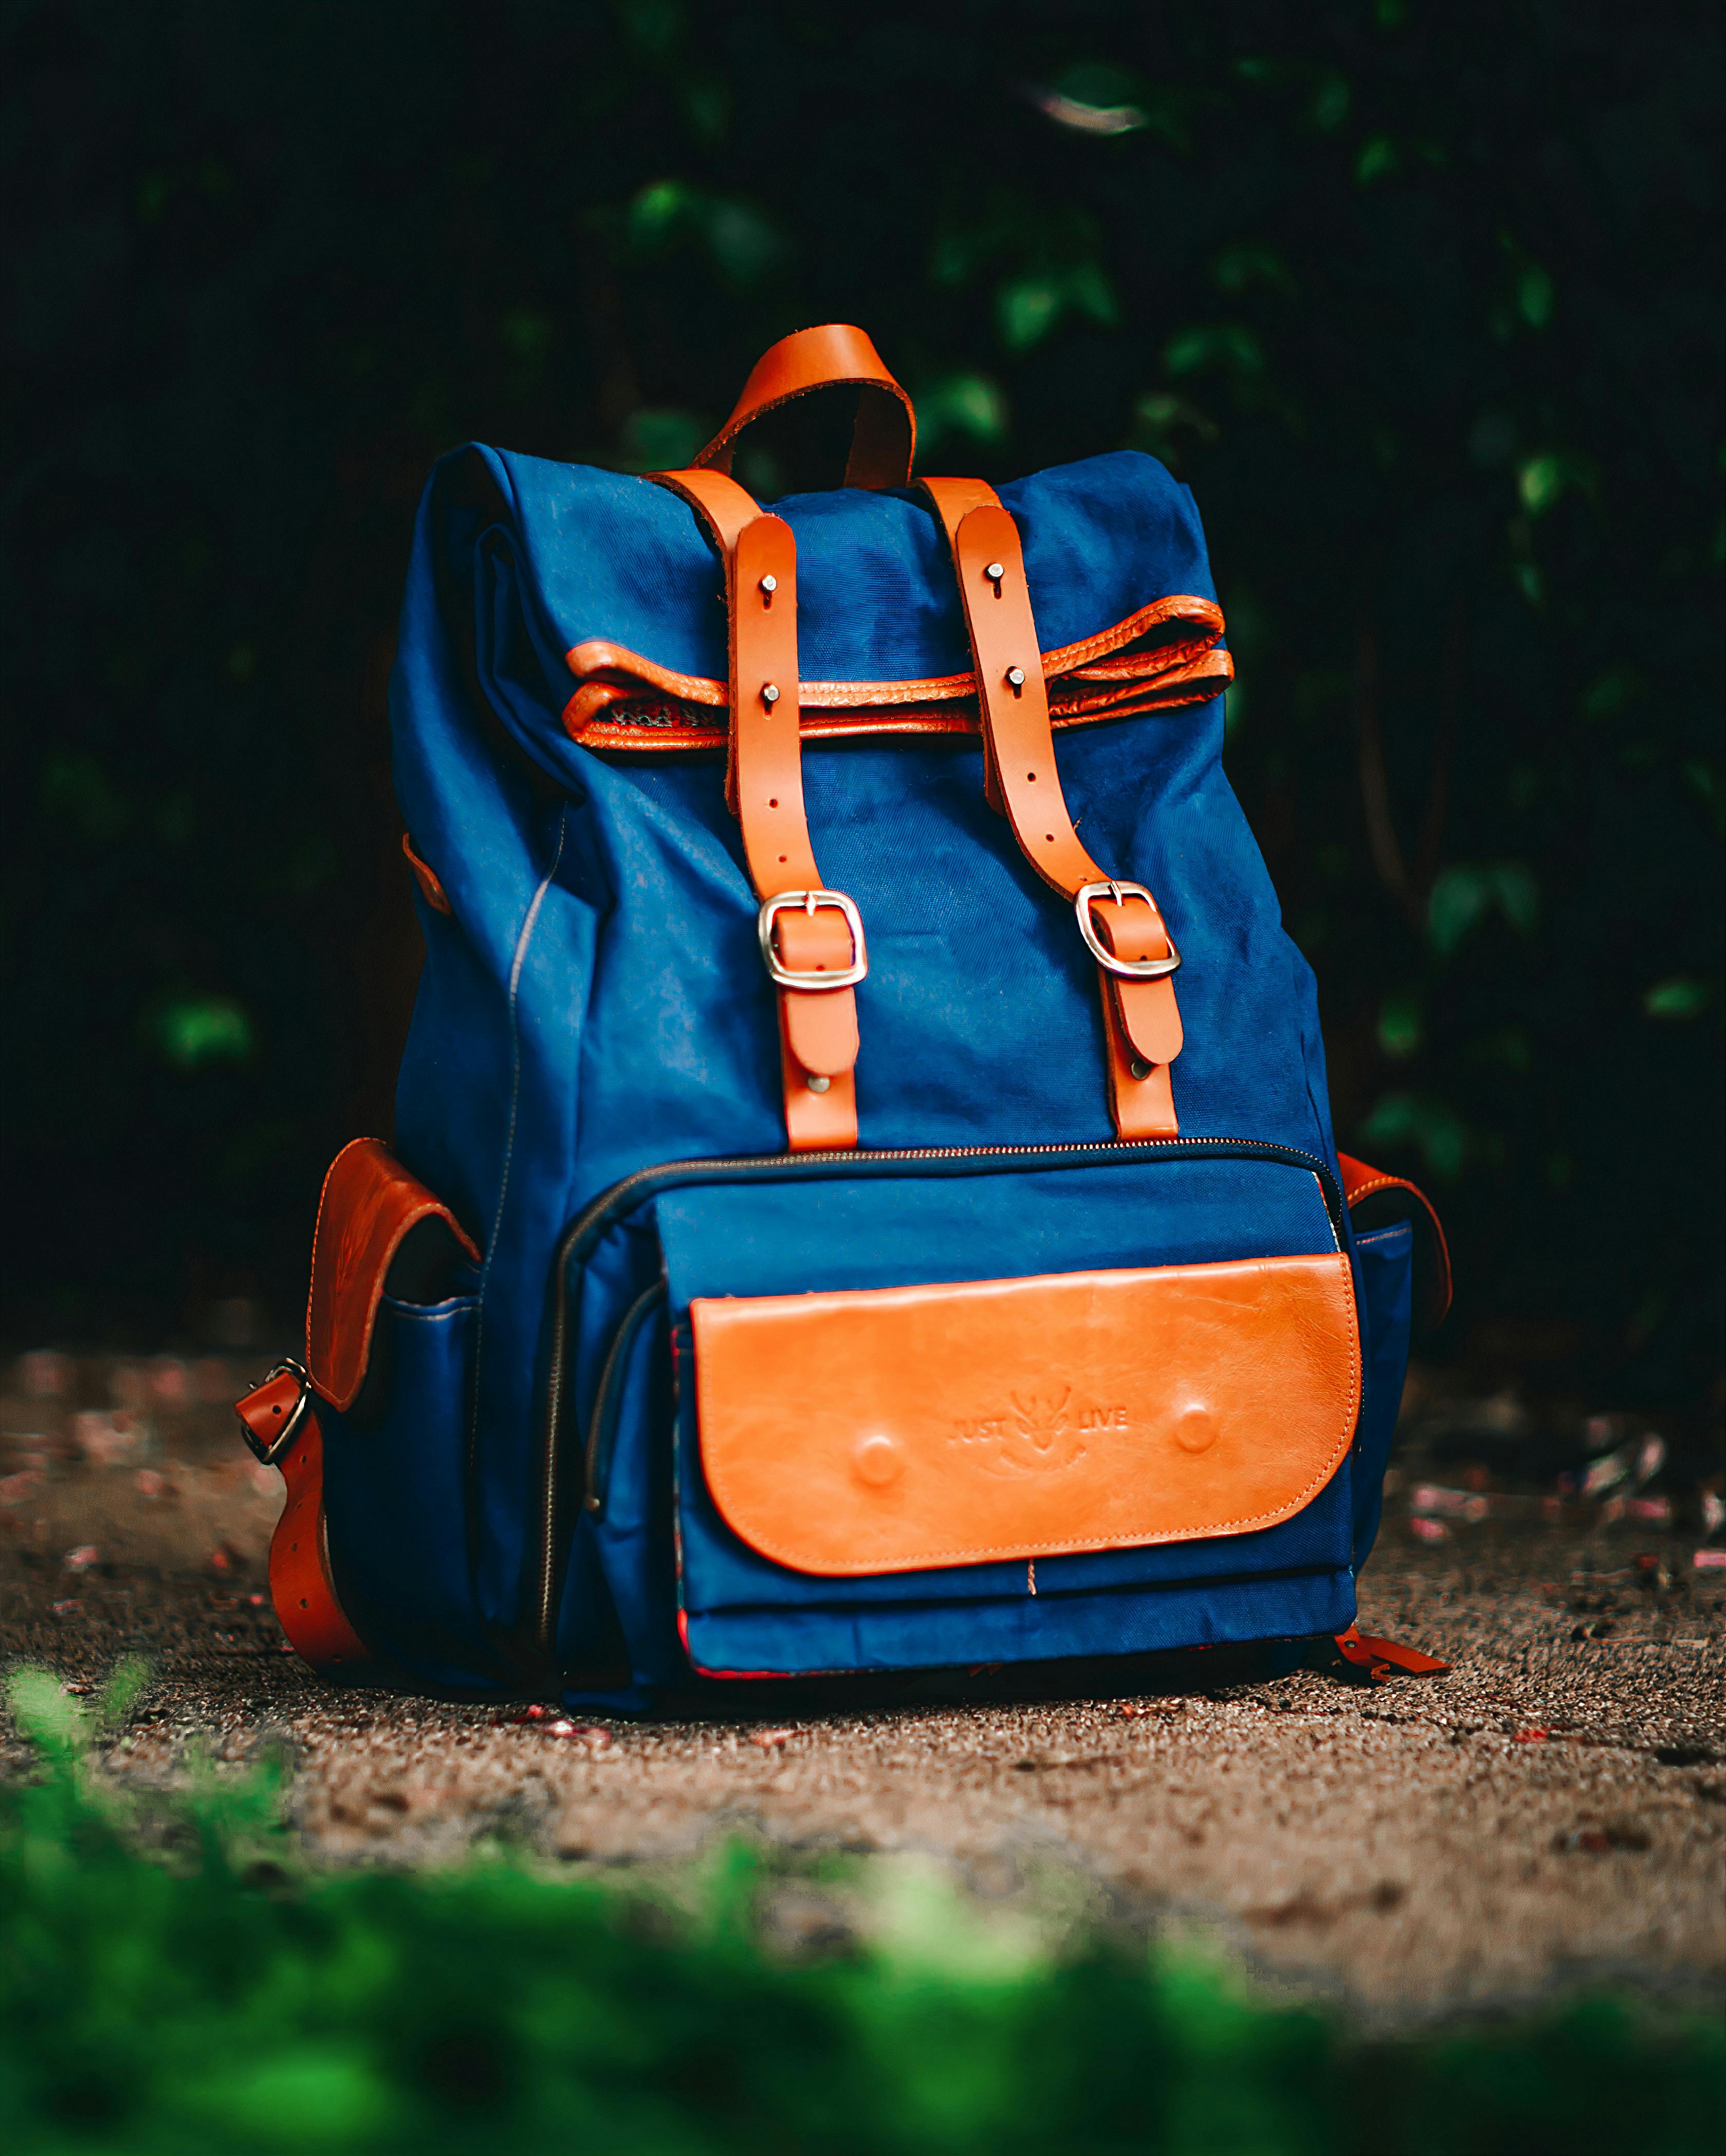 Knapsack vs Backpack: Choosing the Right Bag